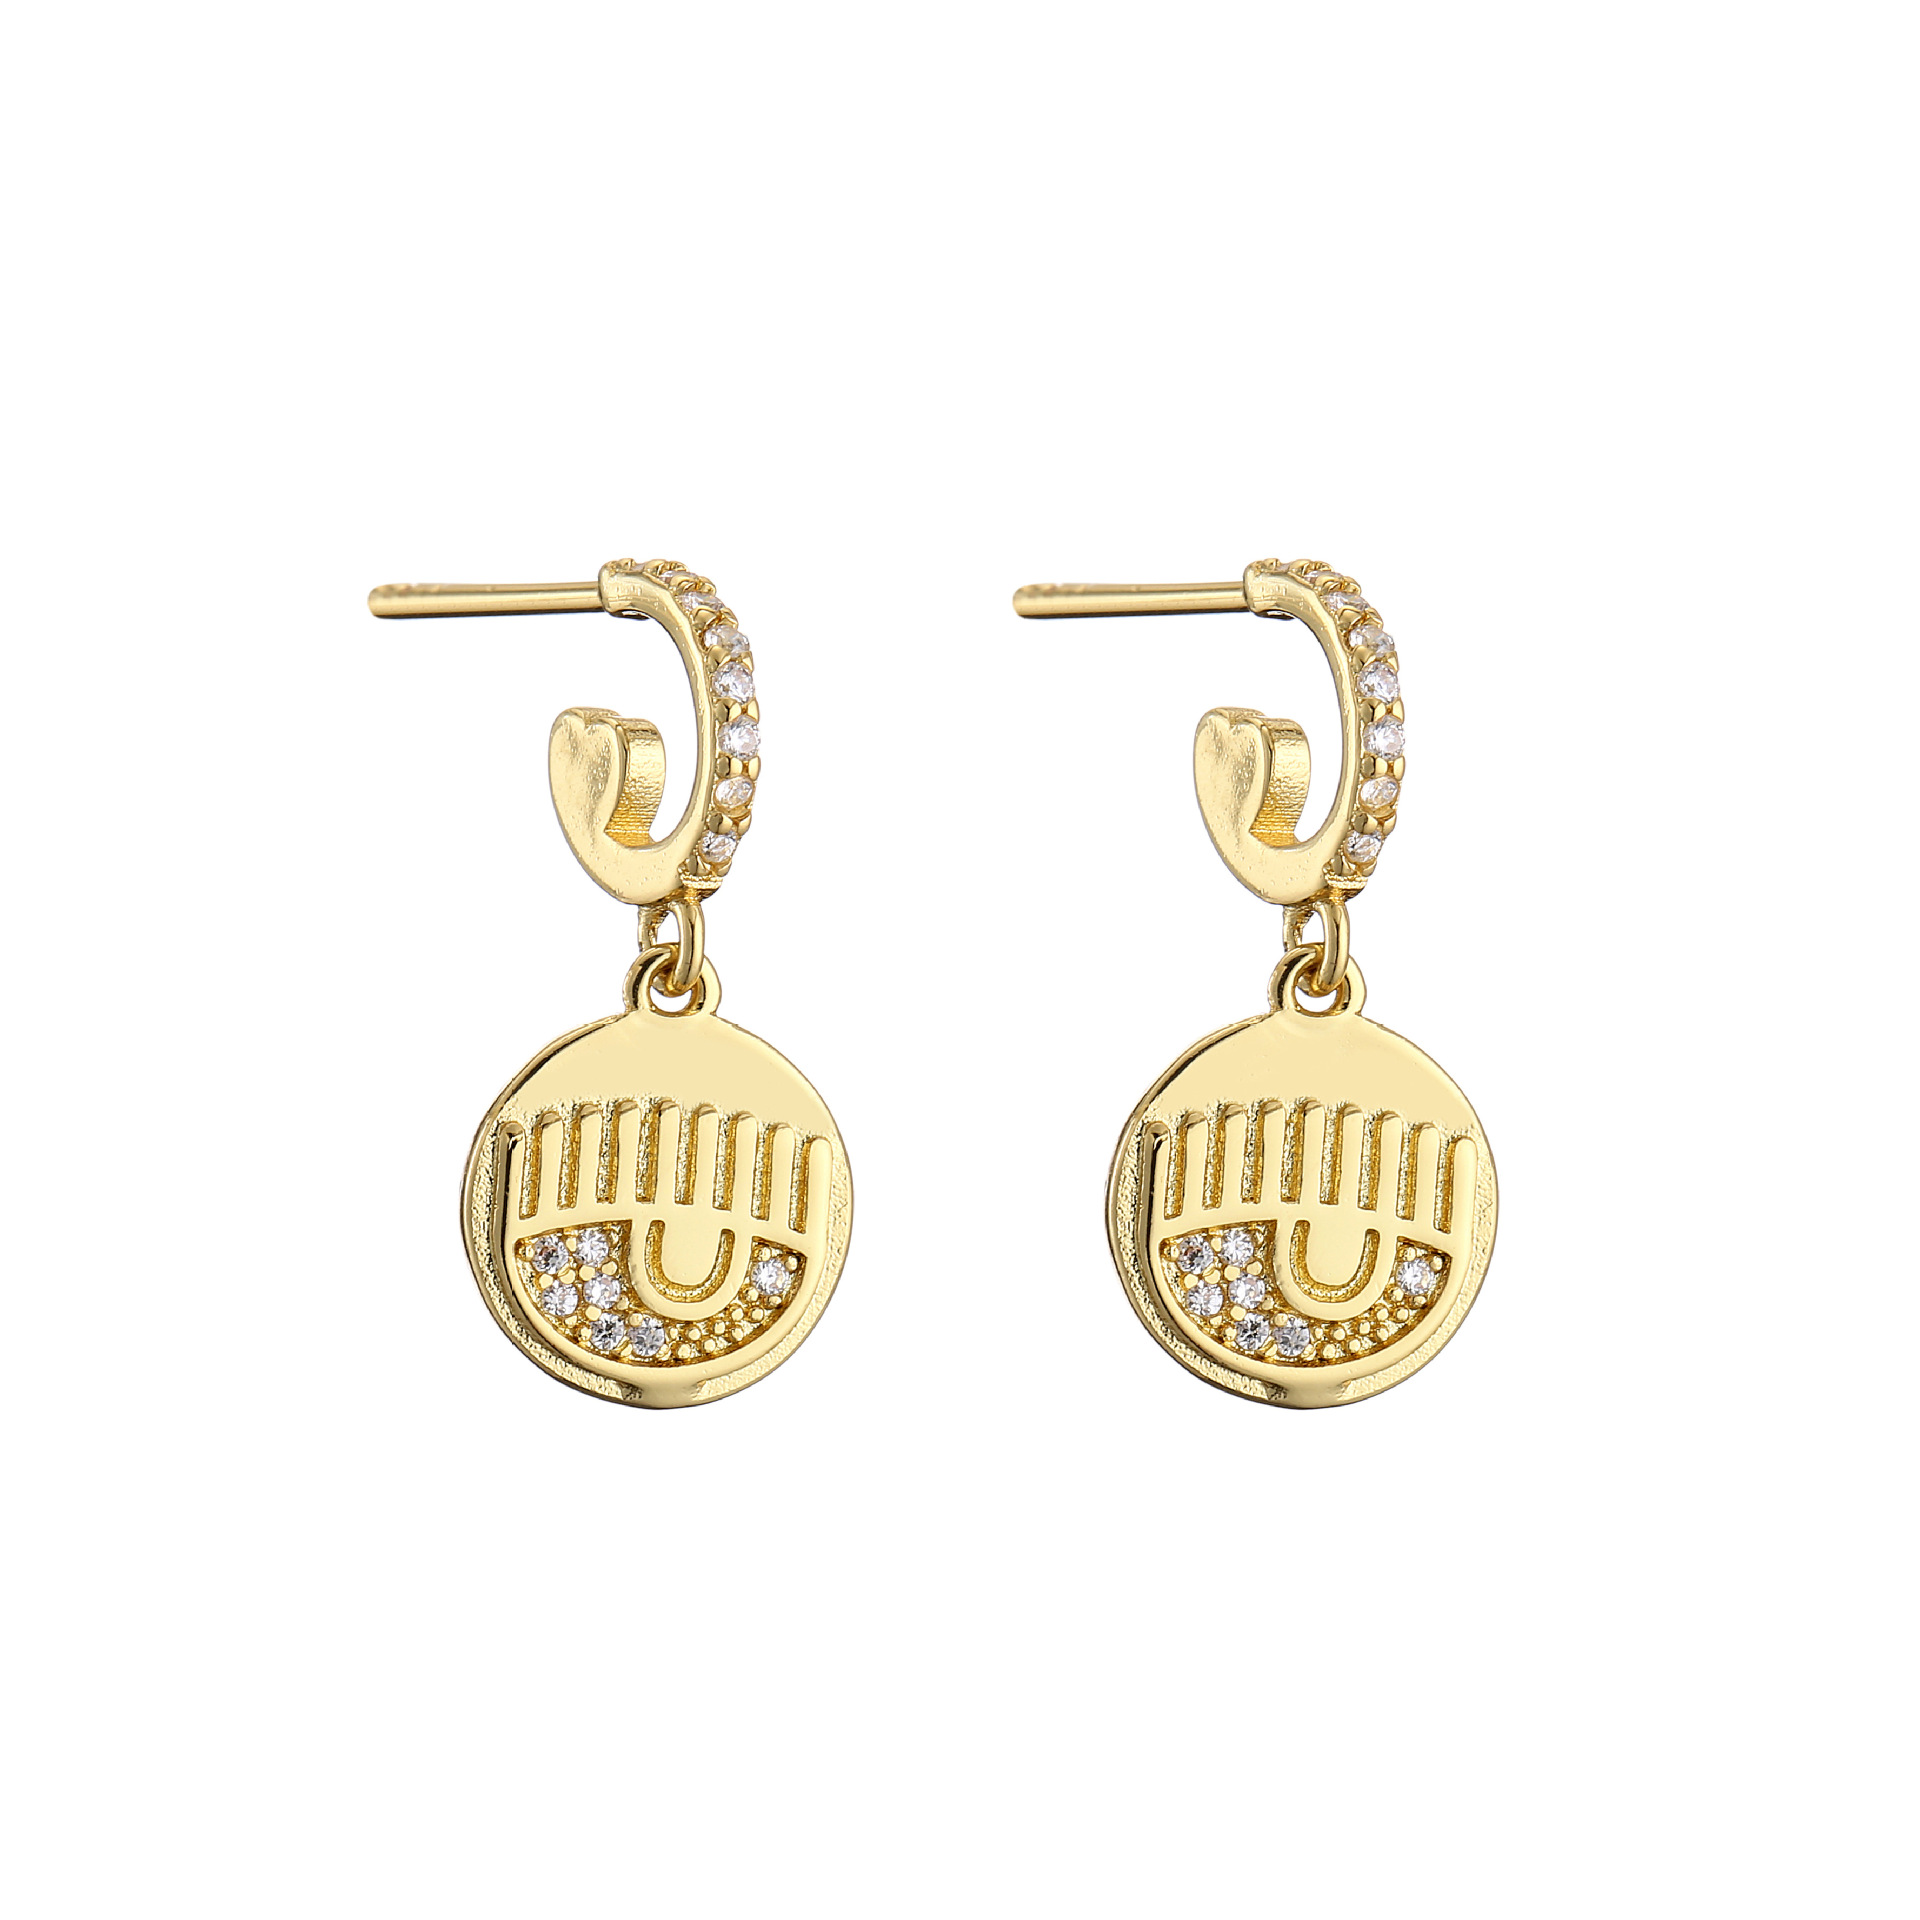 1:Gold Earrings 1 pair